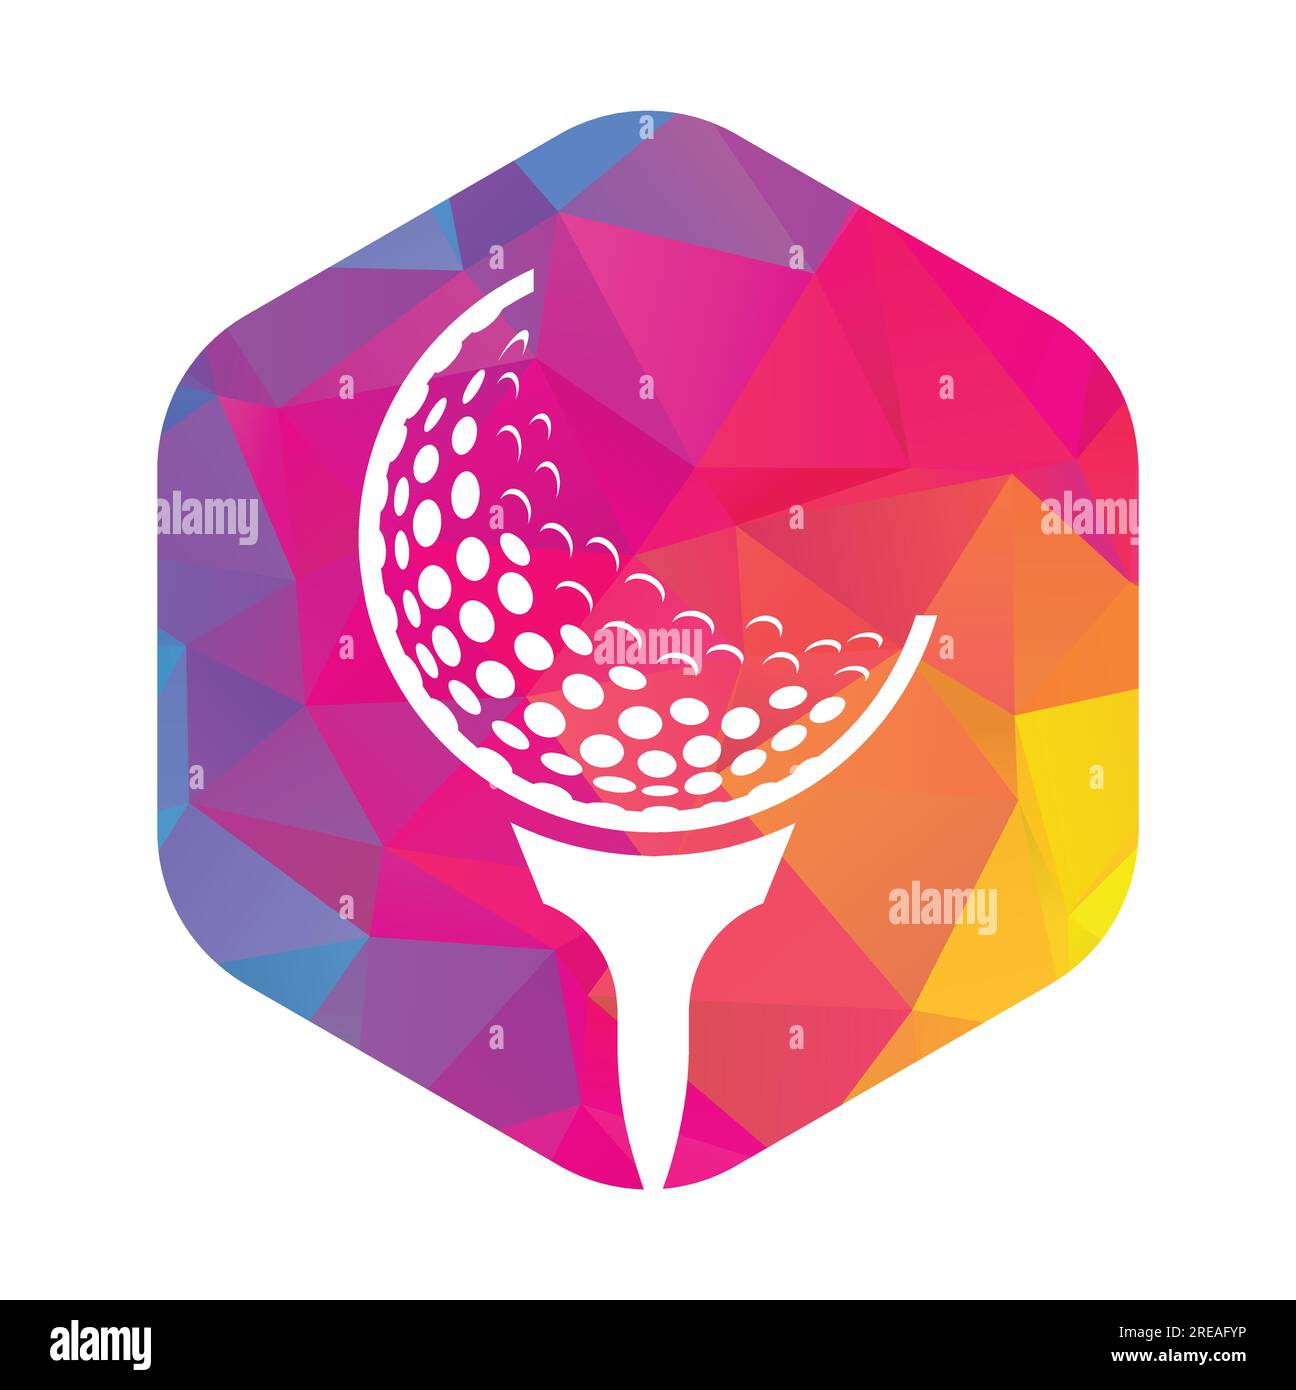 Golf Logo Design Template Vector. Golf ball on tee logo design icon ...